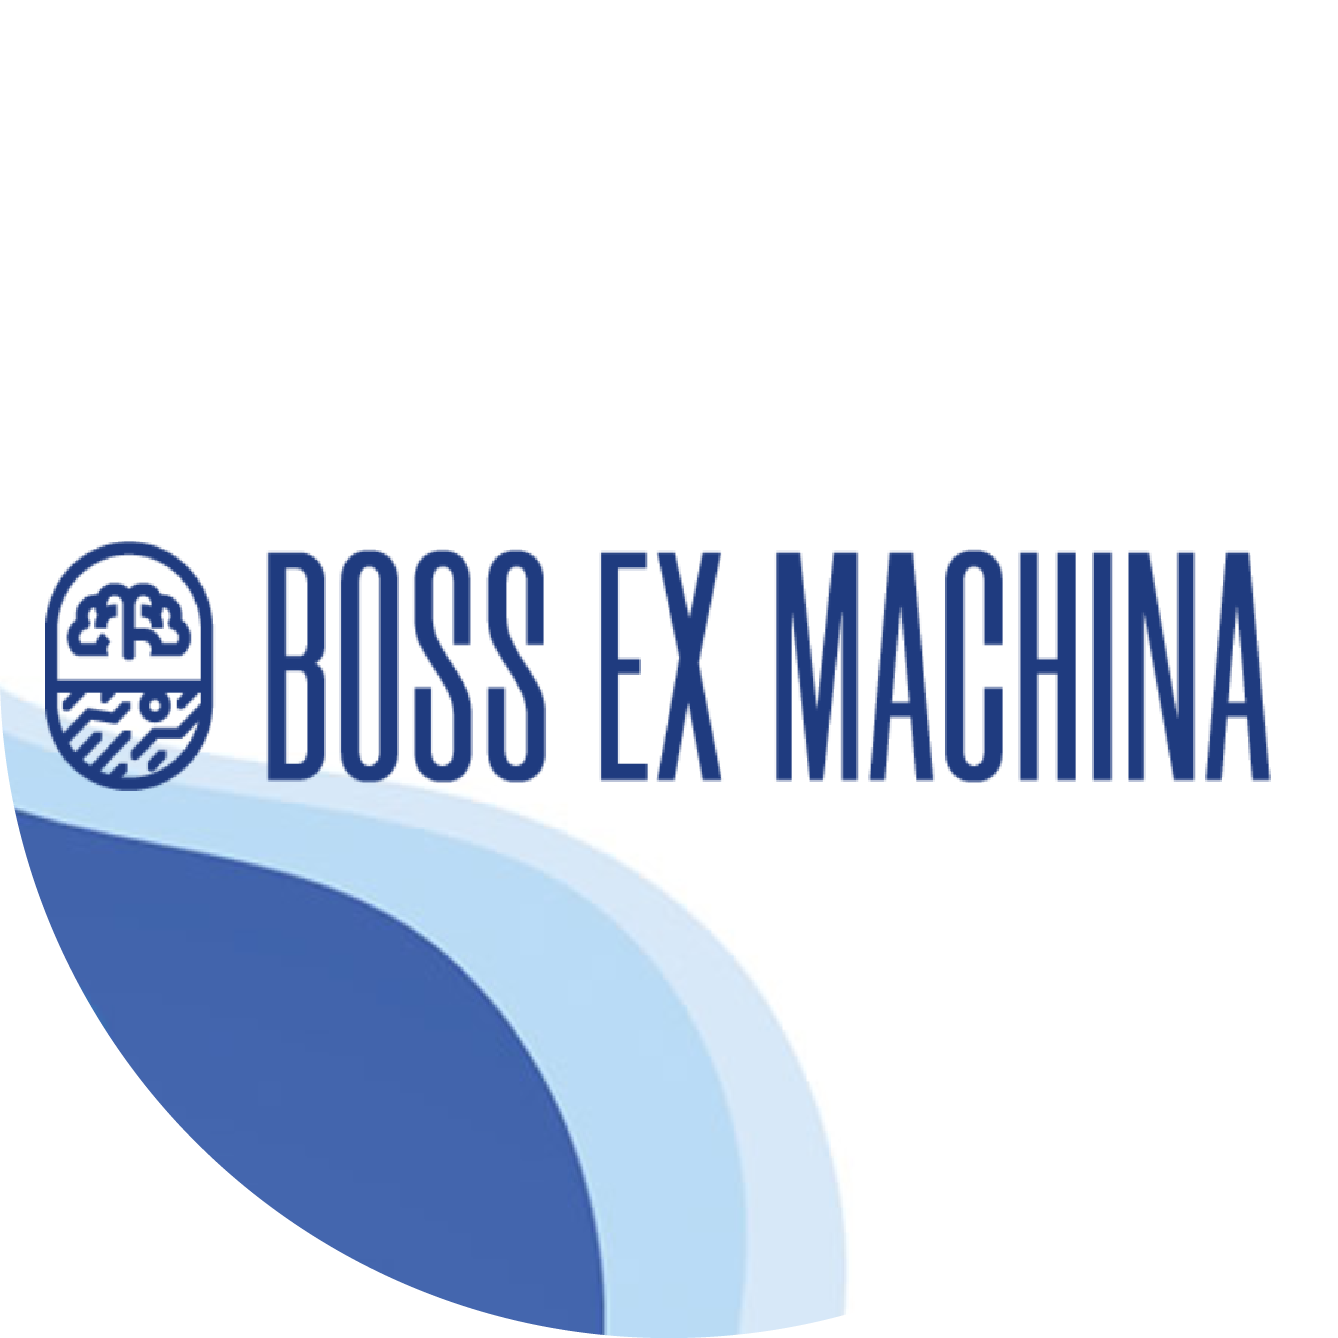 Boss Ex Machina